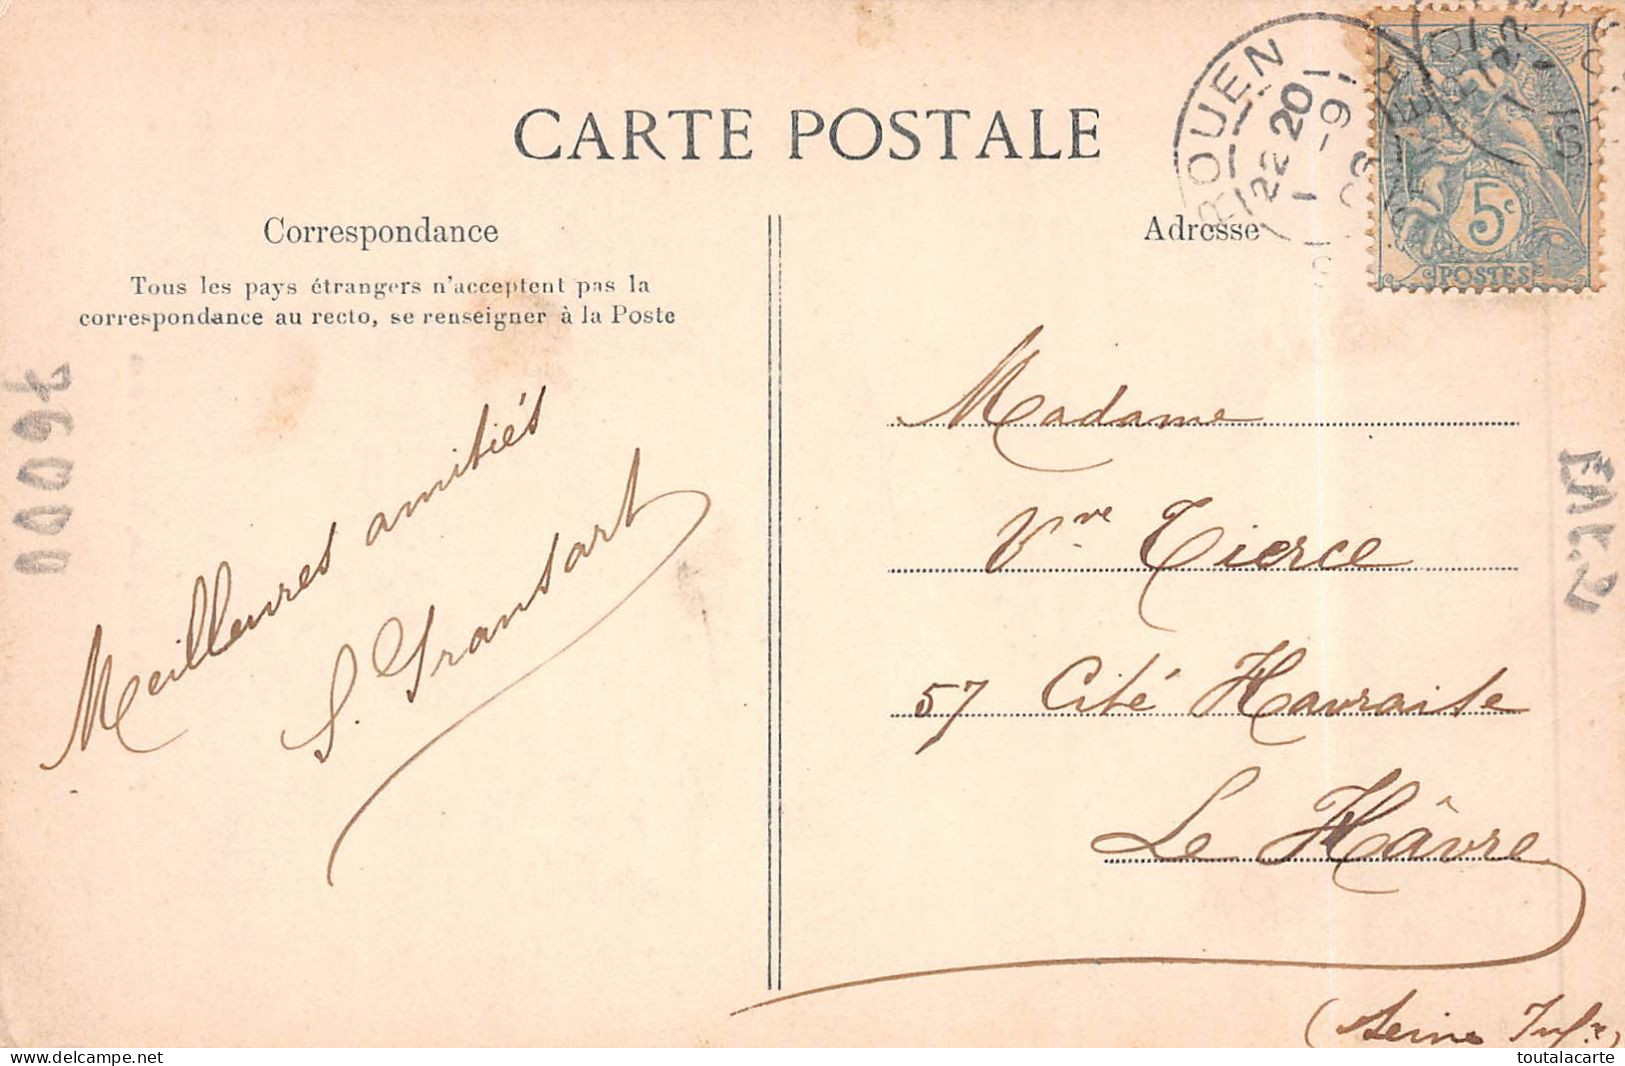 CPA 76 ROUEN FACADE DE L'EGLISE SAINT OUEN    1906 - Rouen